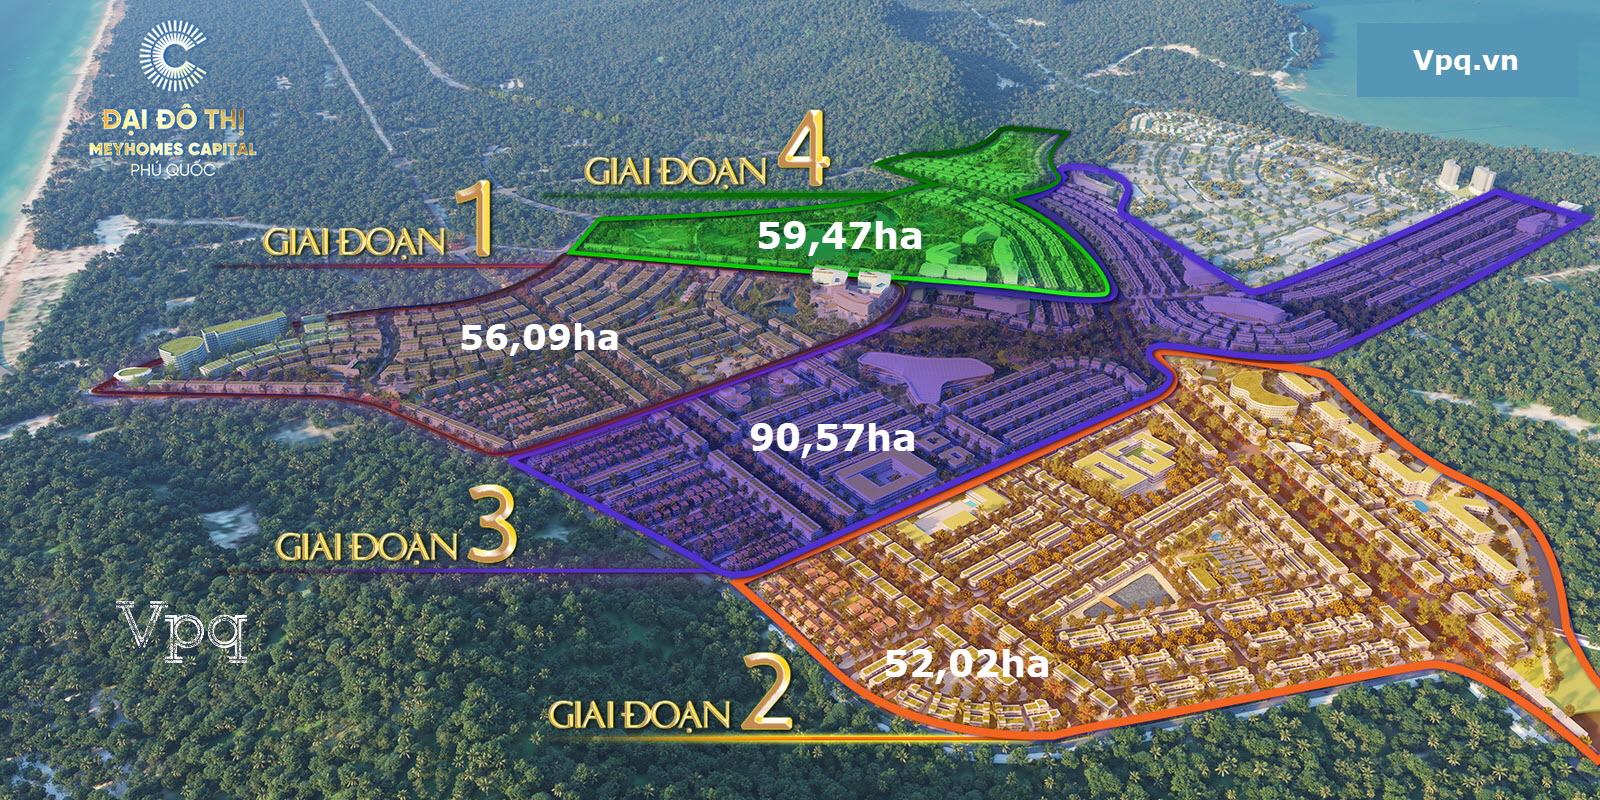 Hình ảnh vị trí 4 giai đoạn Meyhomes Capital Phú Quốc